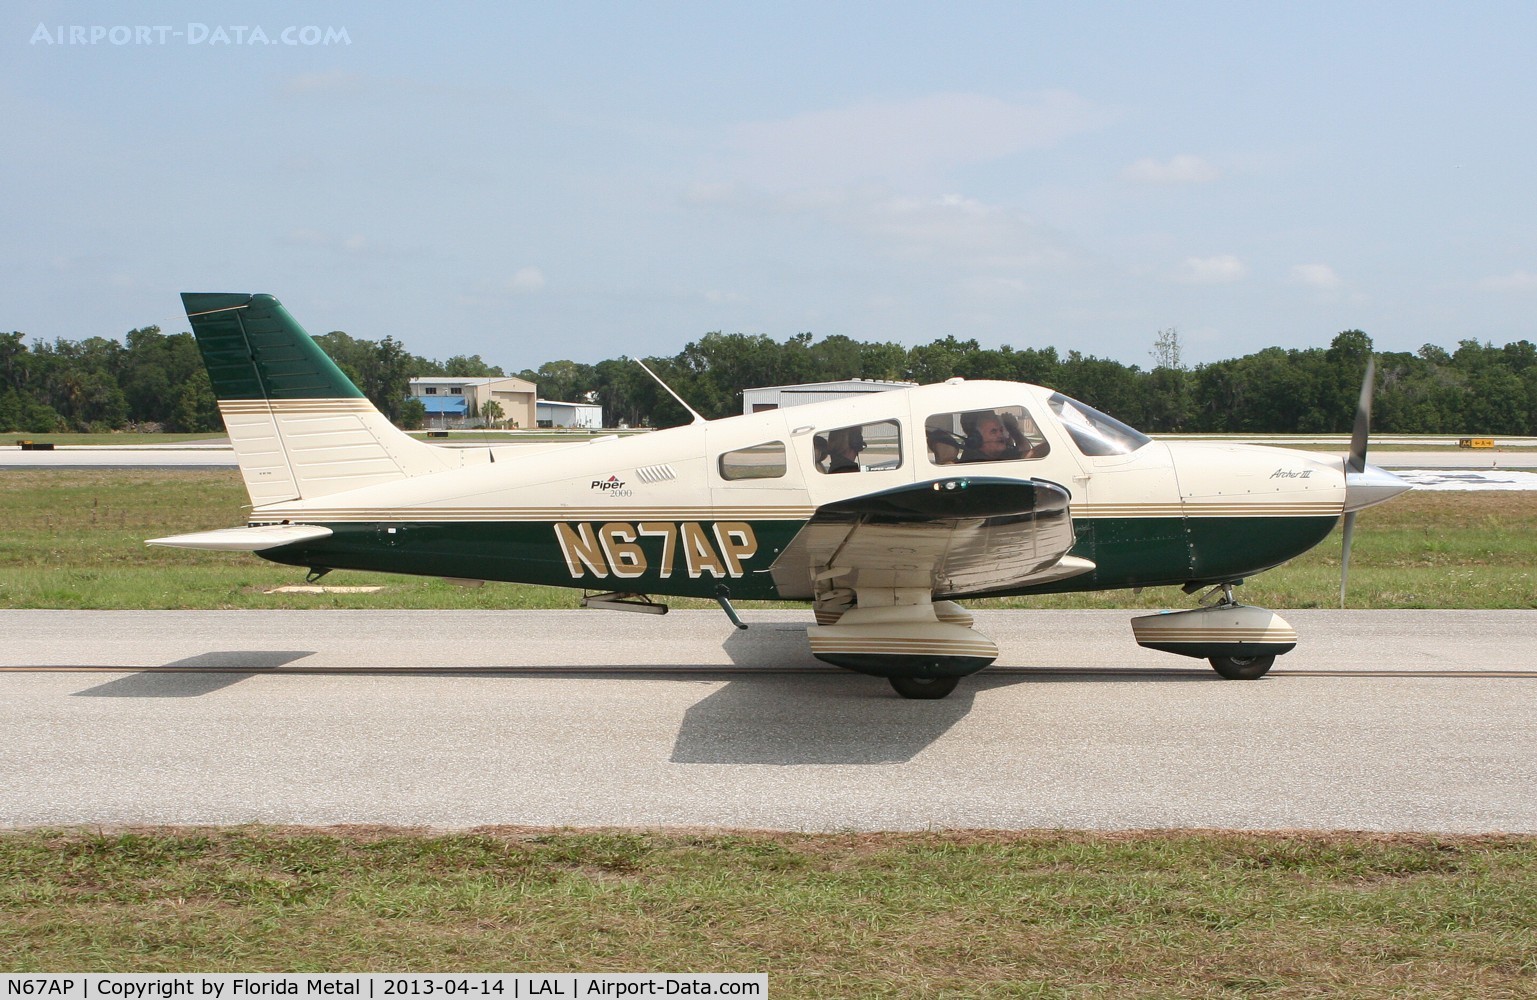 N67AP, 2000 Piper PA-28-181 Archer C/N 2843310, PA-28-181